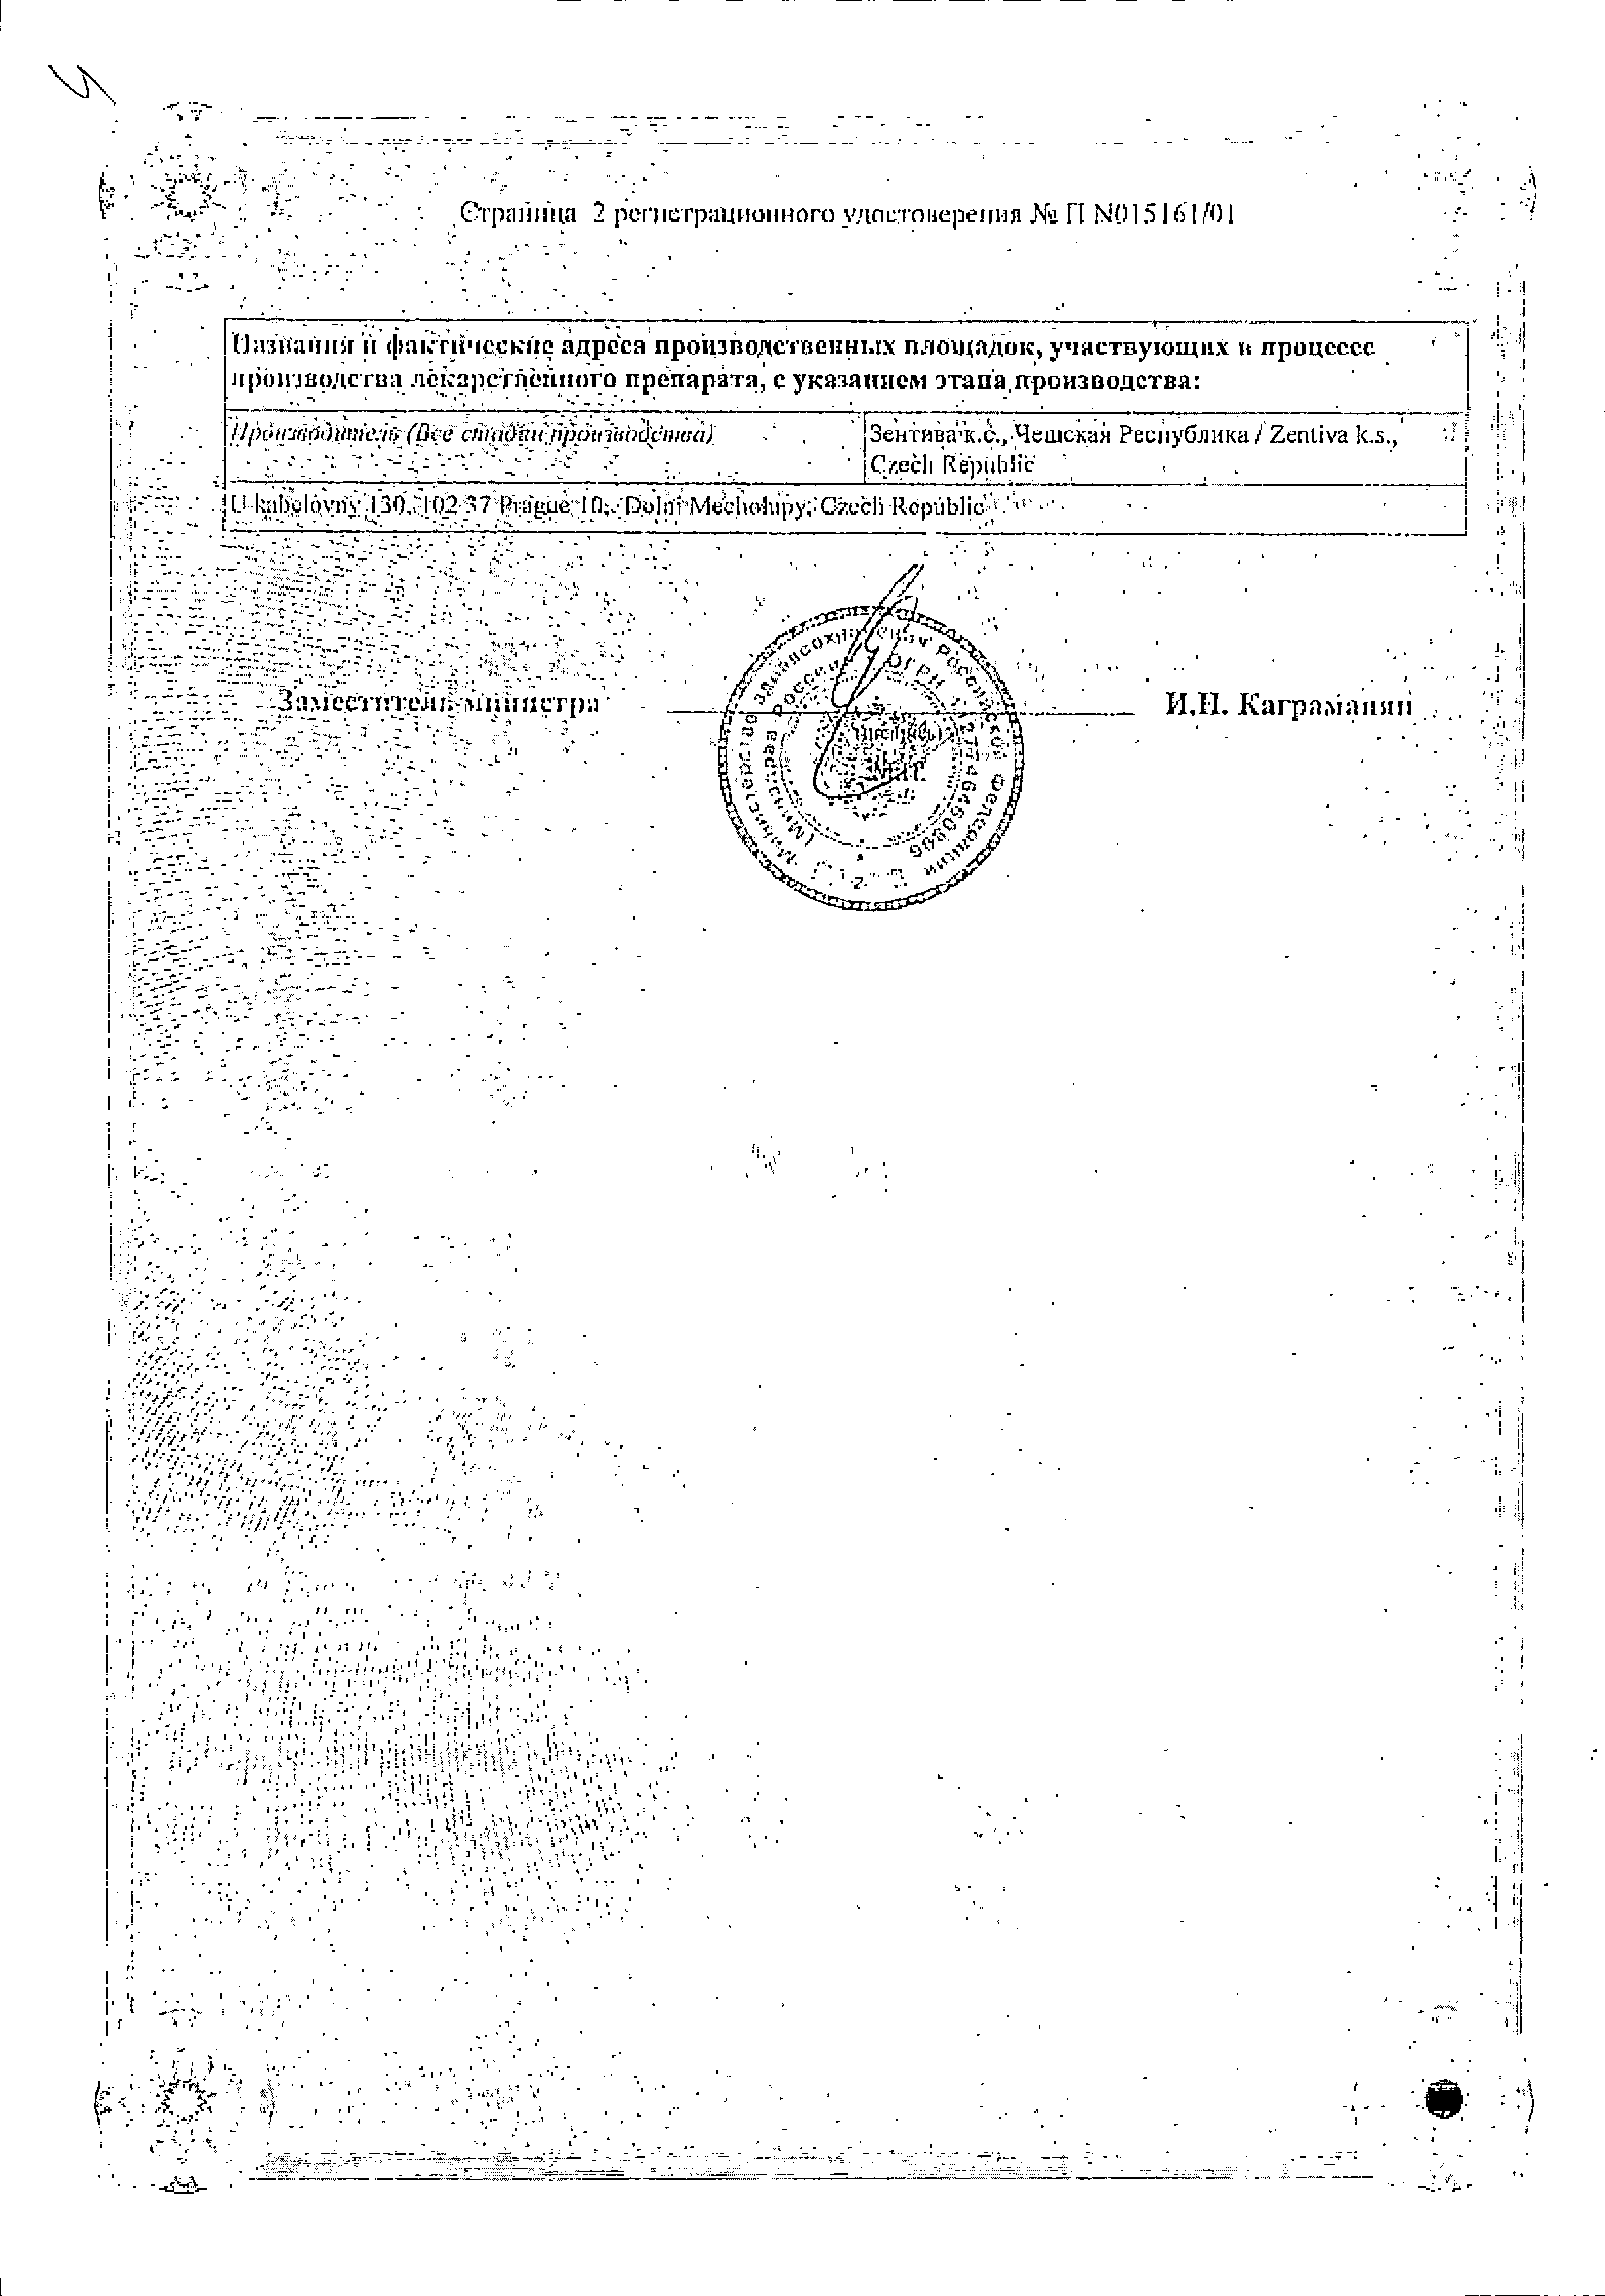 Троксерутин Санофи сертификат